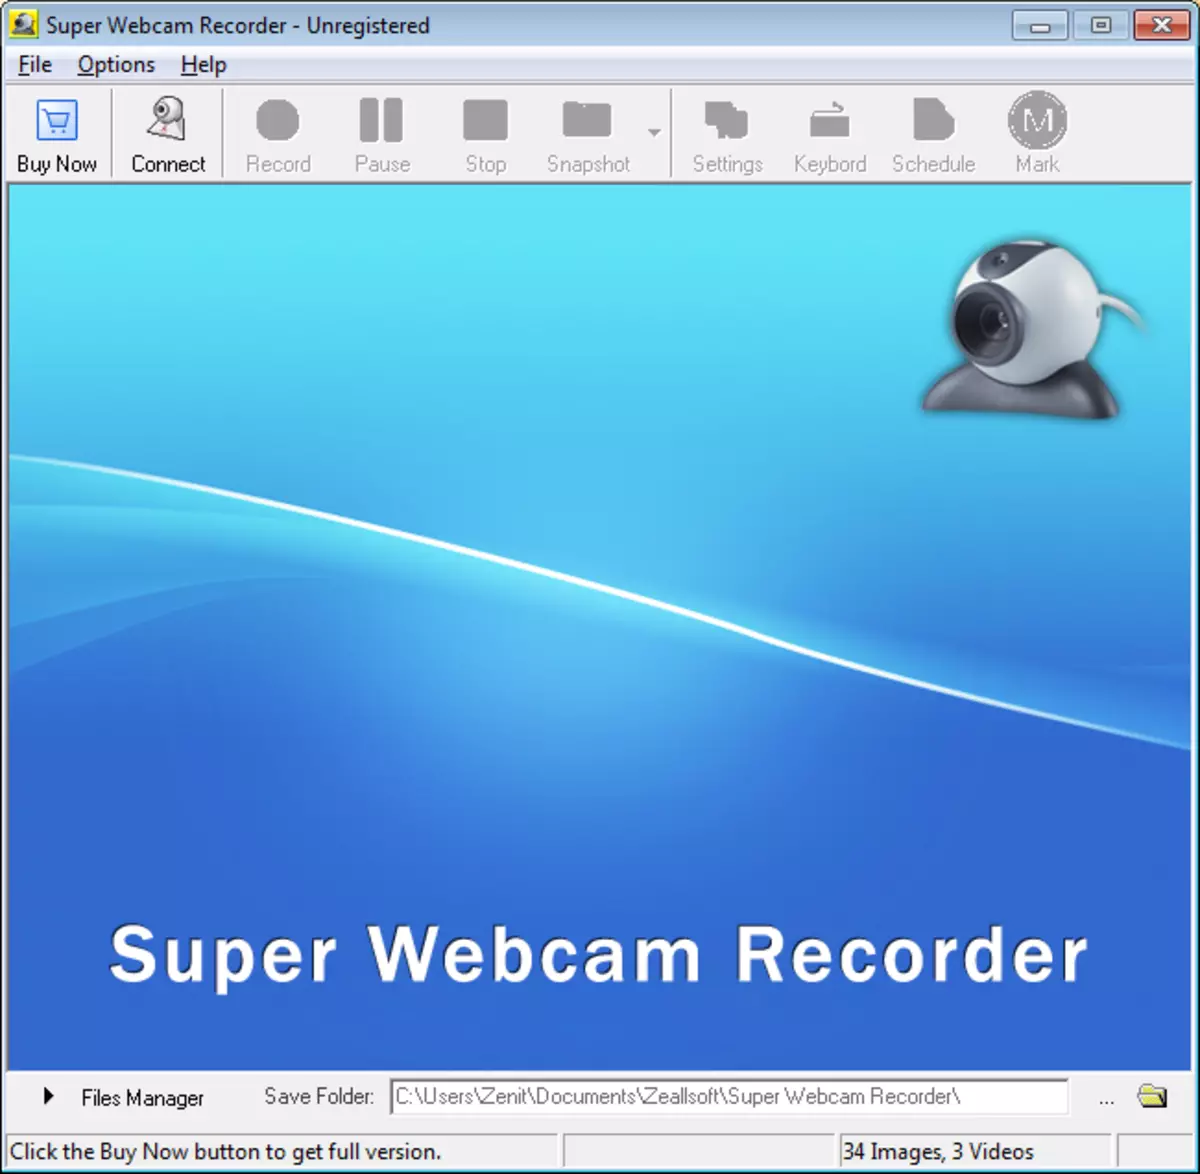 Lub qhov rai loj super webcam recorder hauv cov kev zov me nyuam sau cov ntaub ntawv nrog webcam